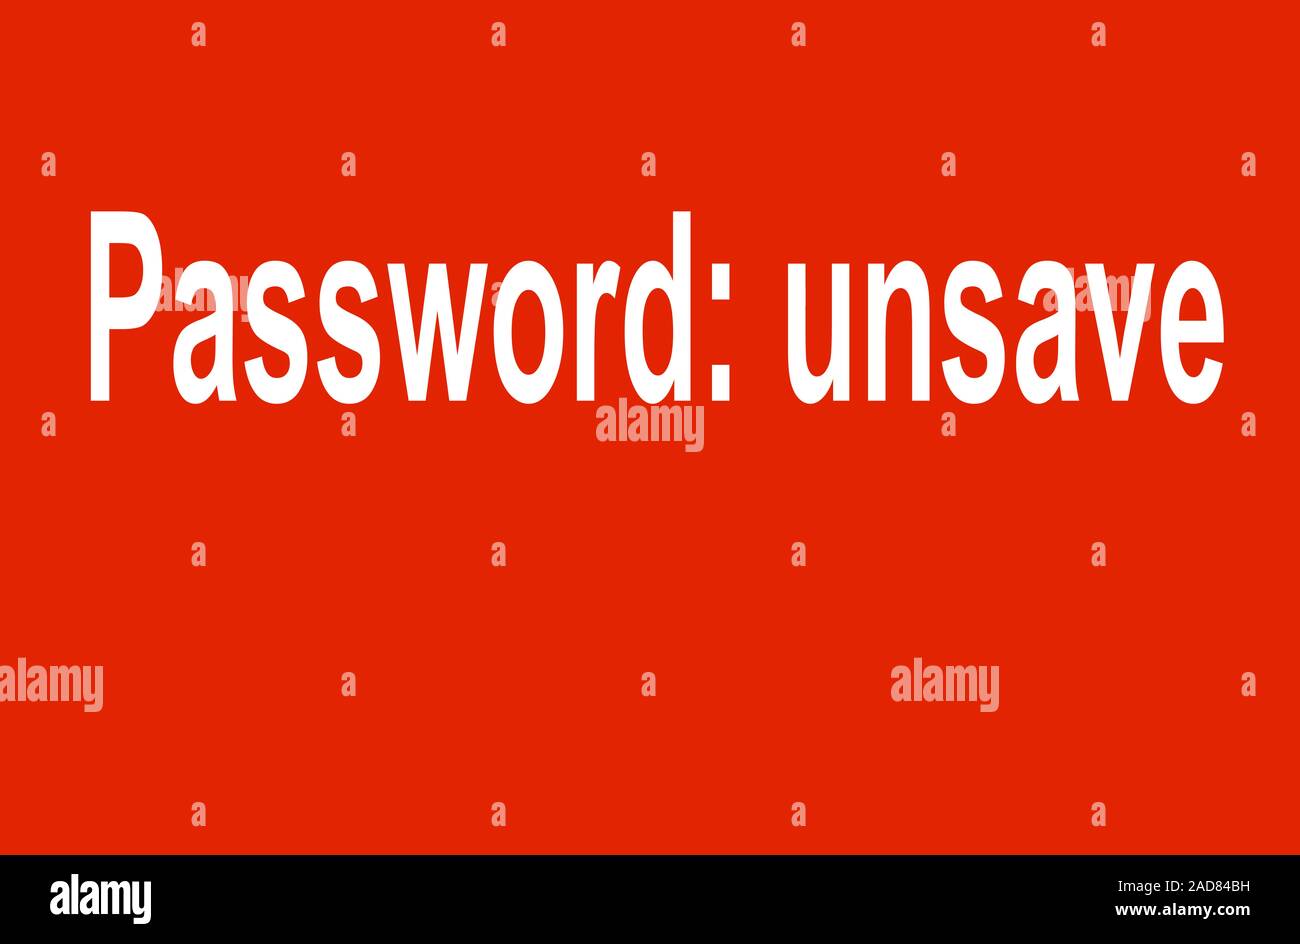 Password unsave Stock Photo